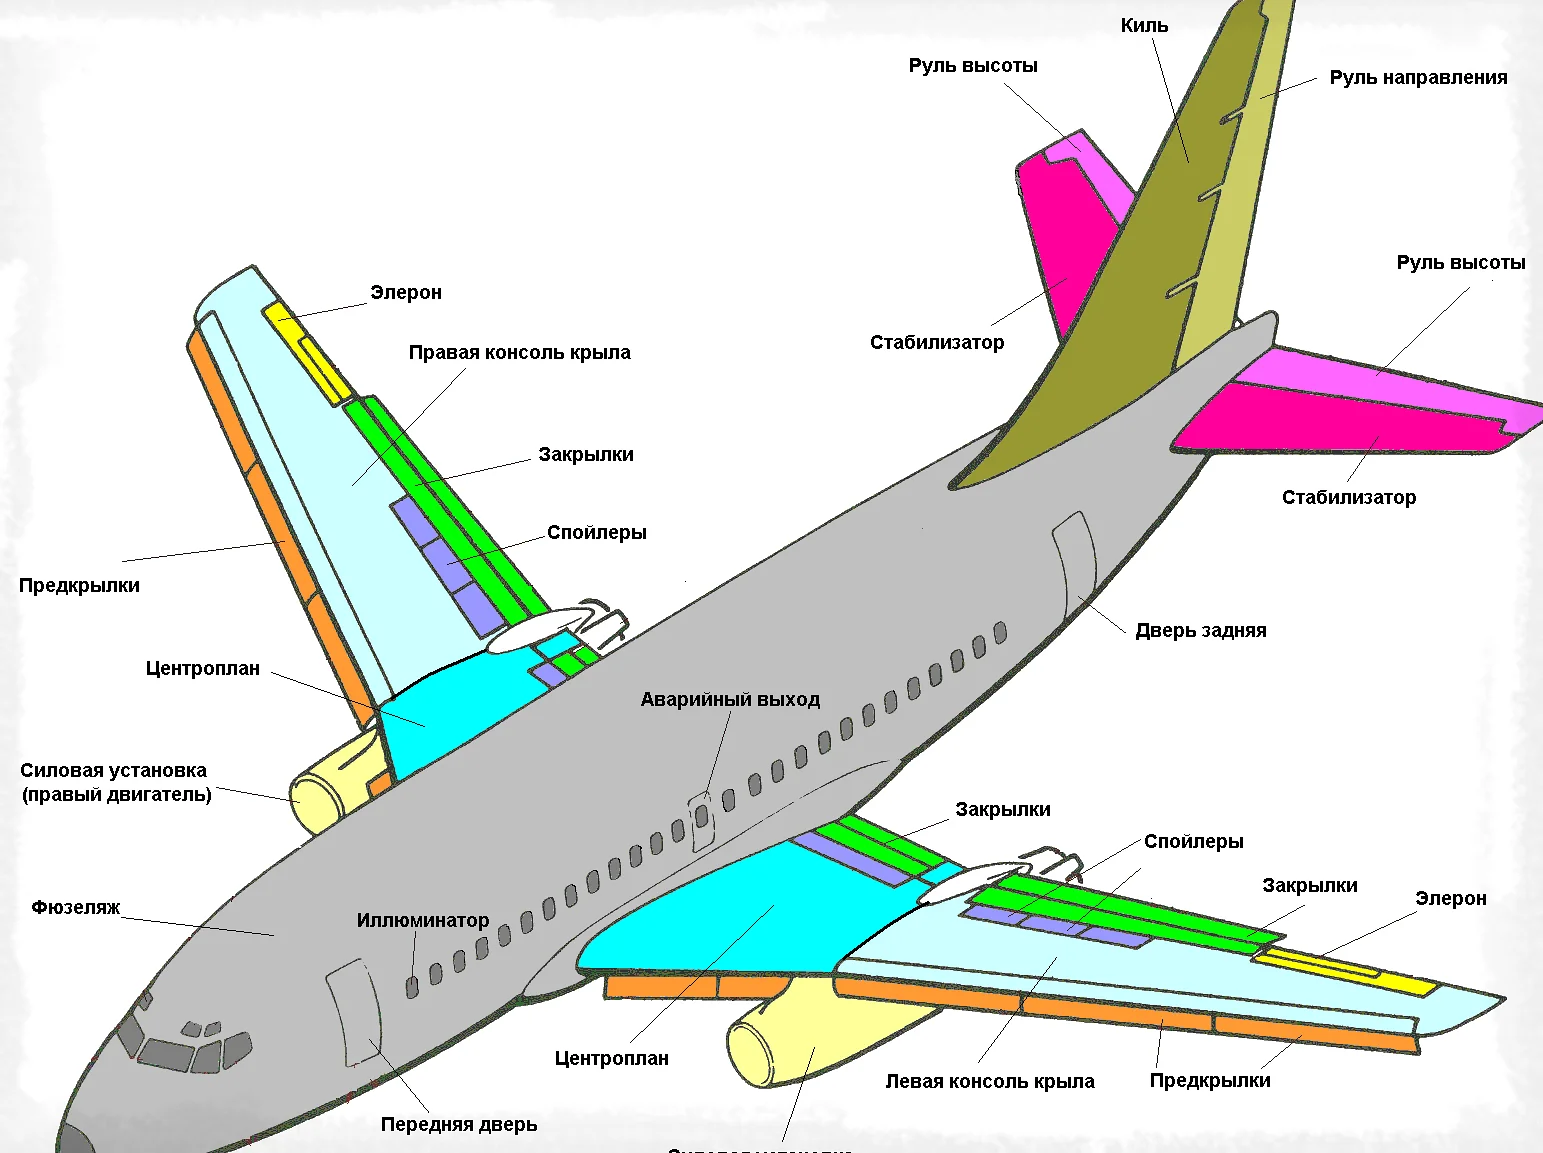 Как устроен самолет - разбираемся в основных системах